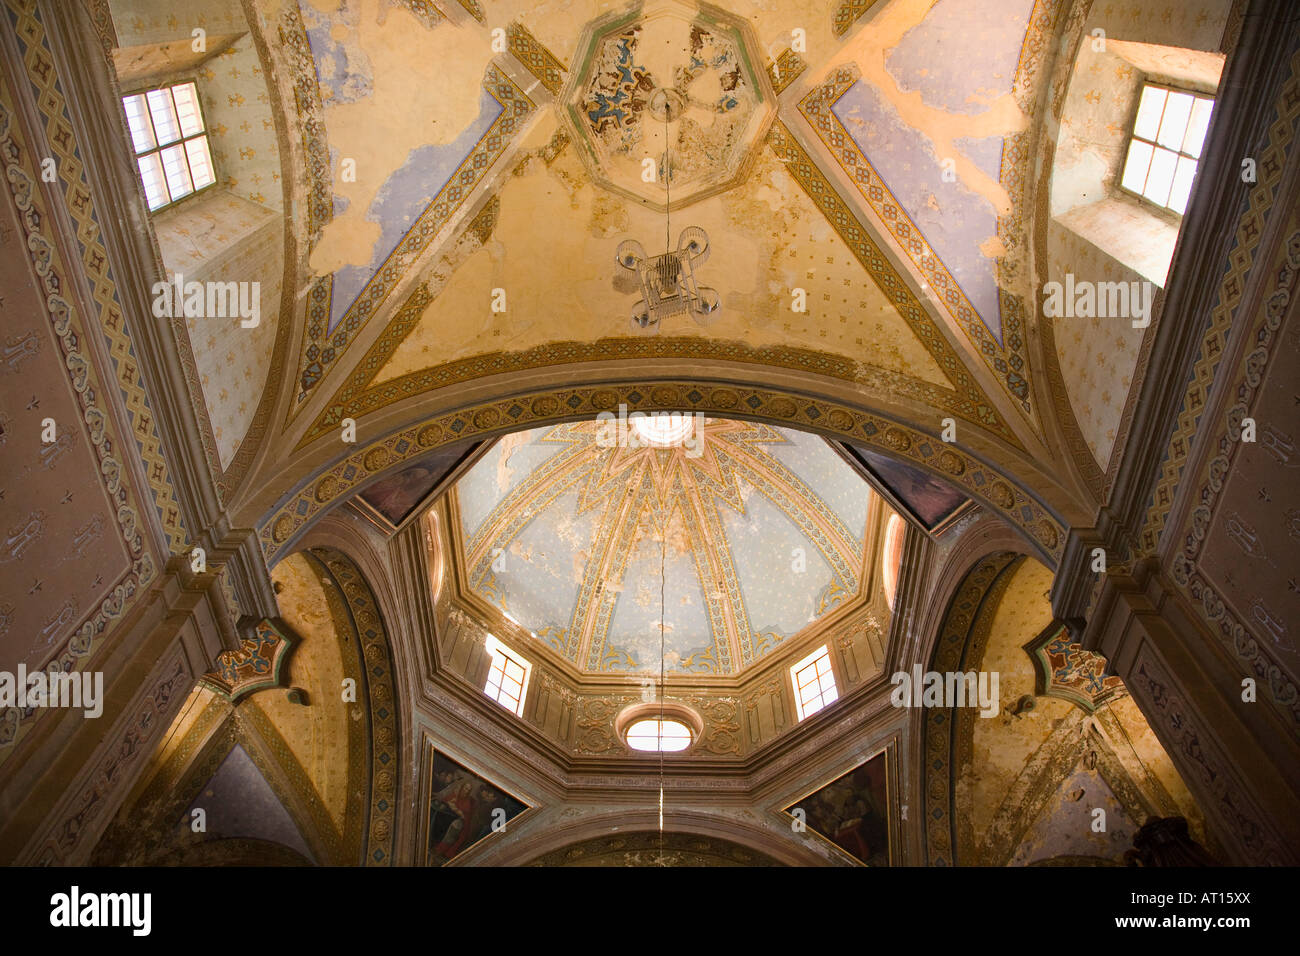 Mexique Guanajuato intérieur de l'église San Roque plafond peint et dome besoin de restauration et réparation Banque D'Images